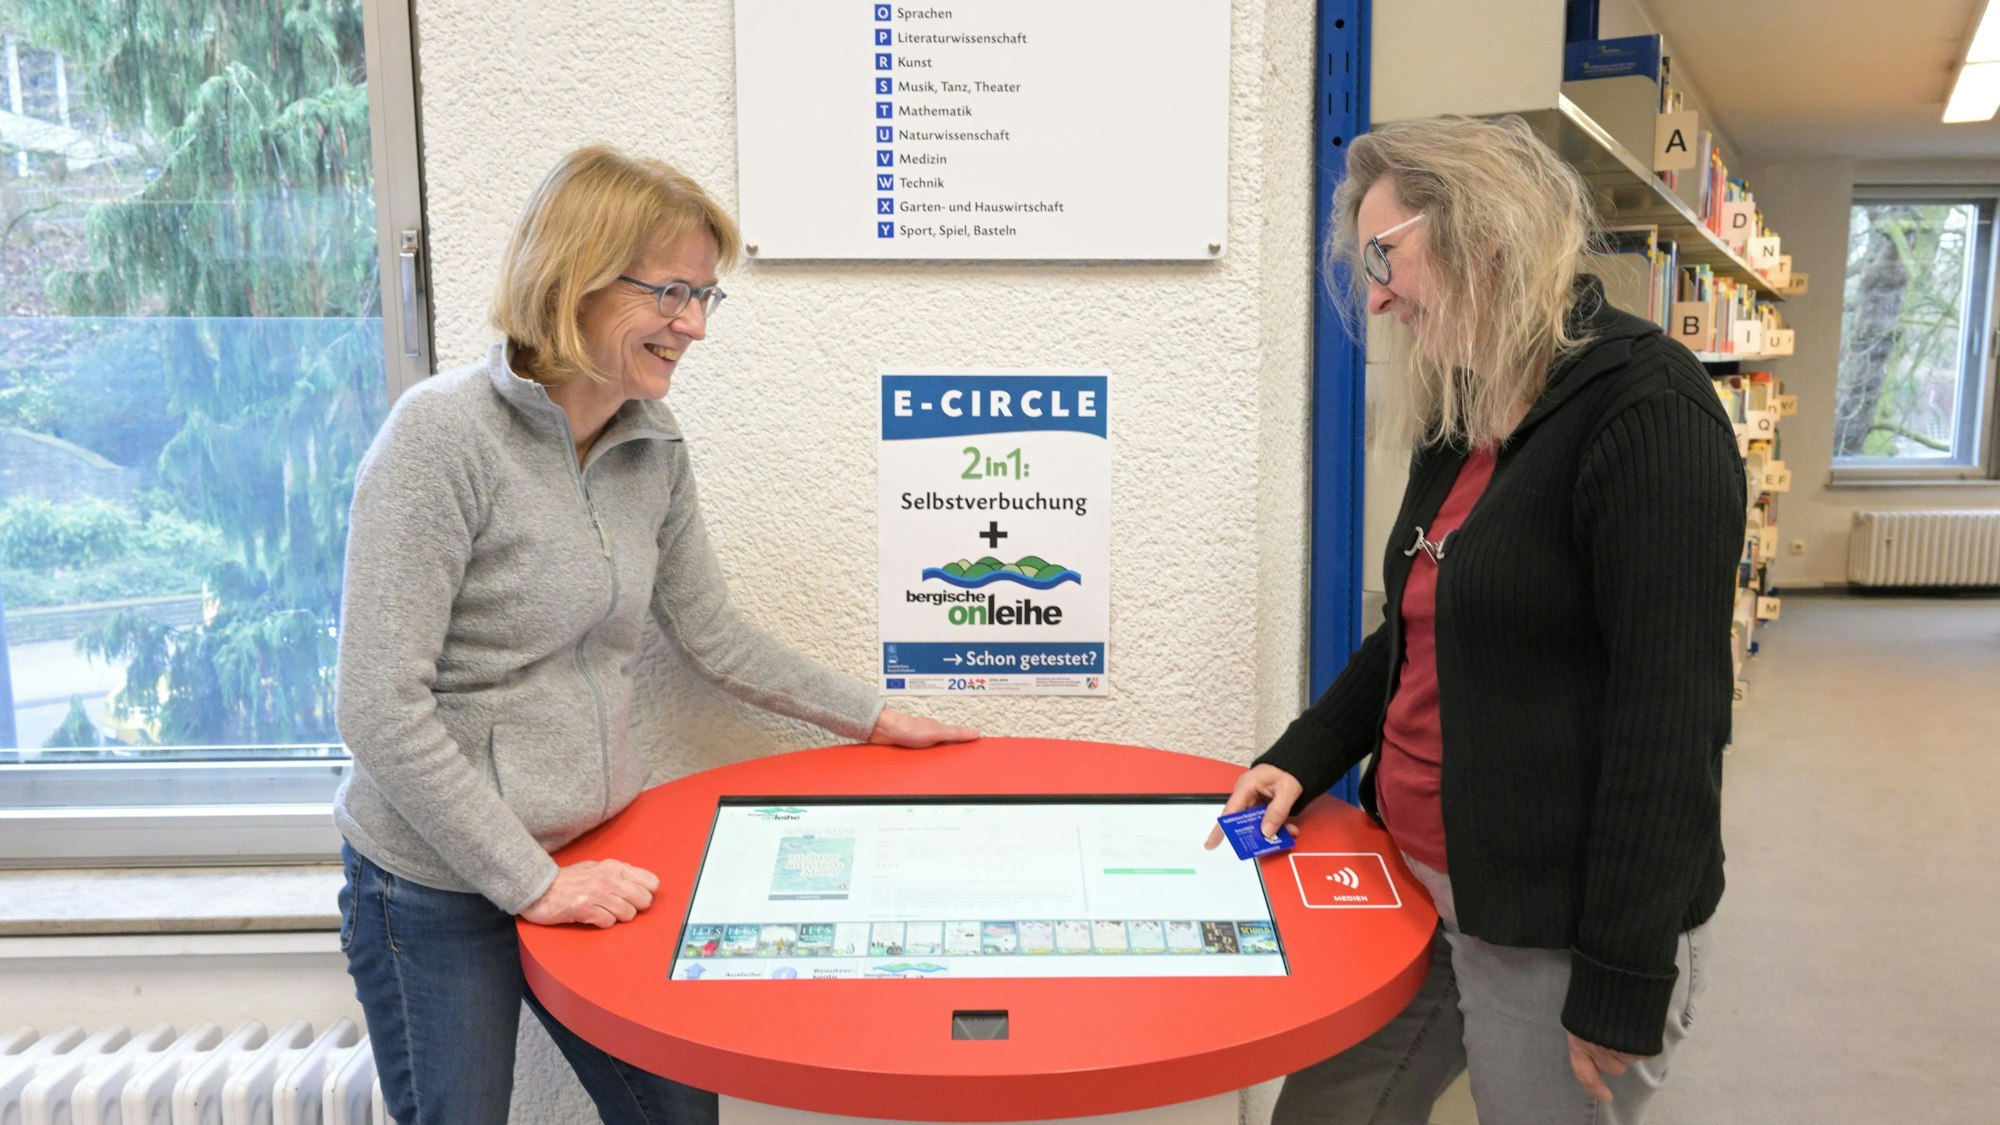 Monika Gippert (l.) und Sabine Lorenz erklären, wie das neue Buchungsgerät ECircle funktioniert.